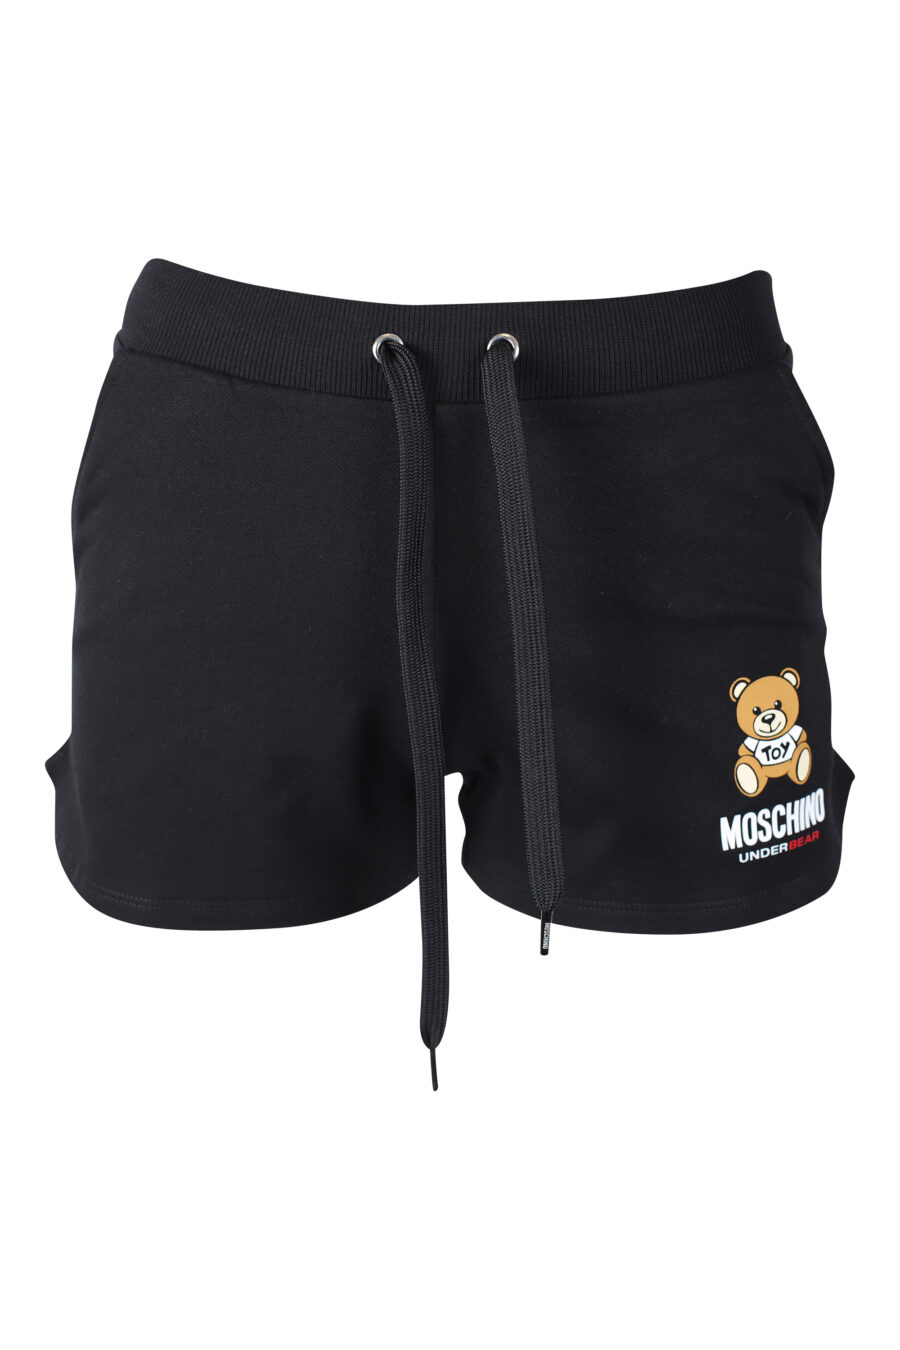 Pantalón de chándal corto negro con logo oso underbear - IMG 2285